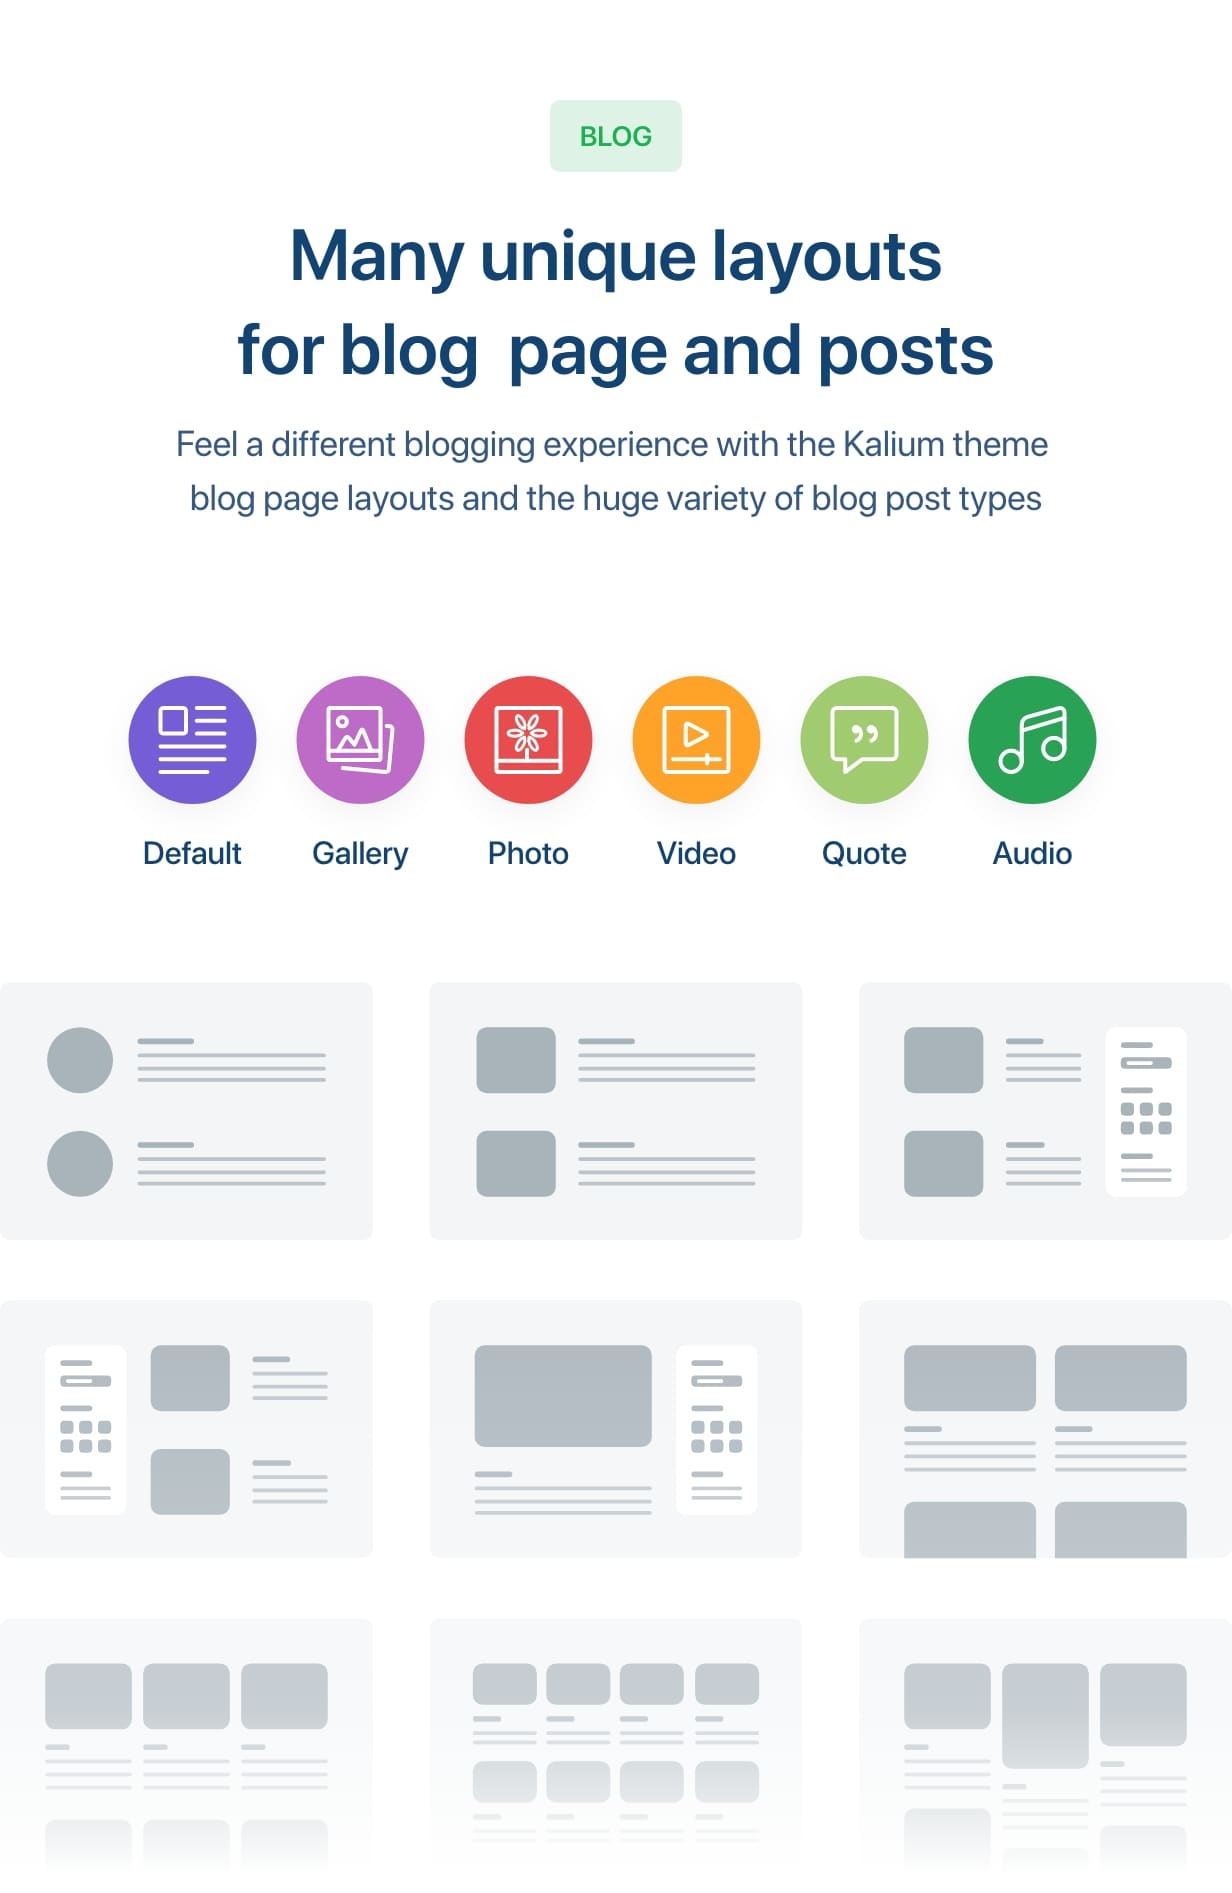 Muchos diseños únicos para la página del blog y las publicaciones.